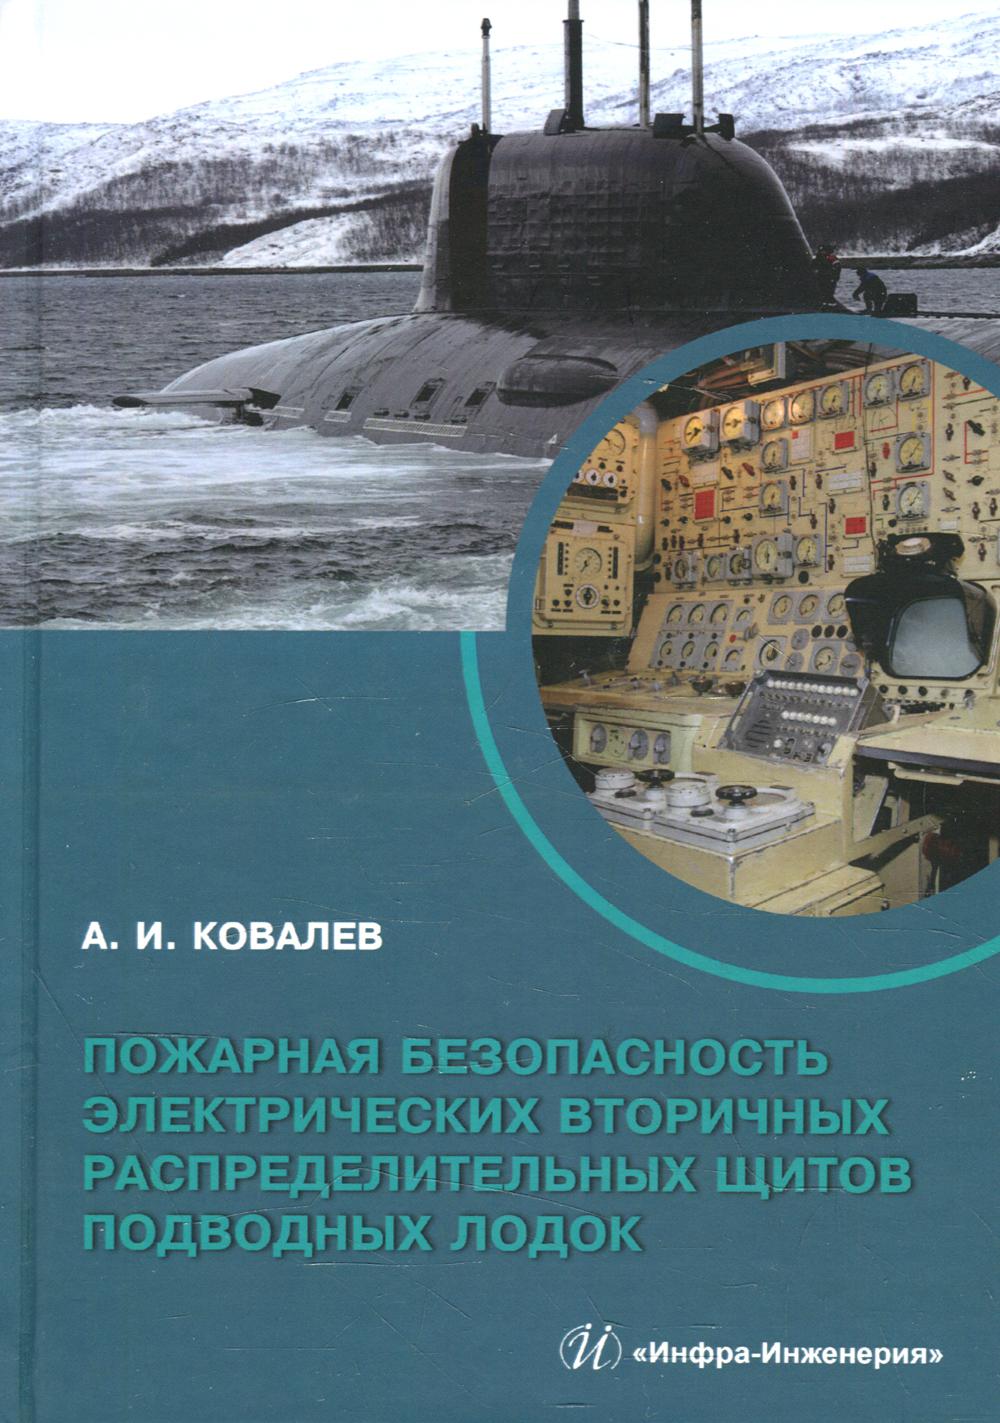 фото Книга пожарная безопасность электрических вторичных распределительных щитов подводных л... инфра-инженерия